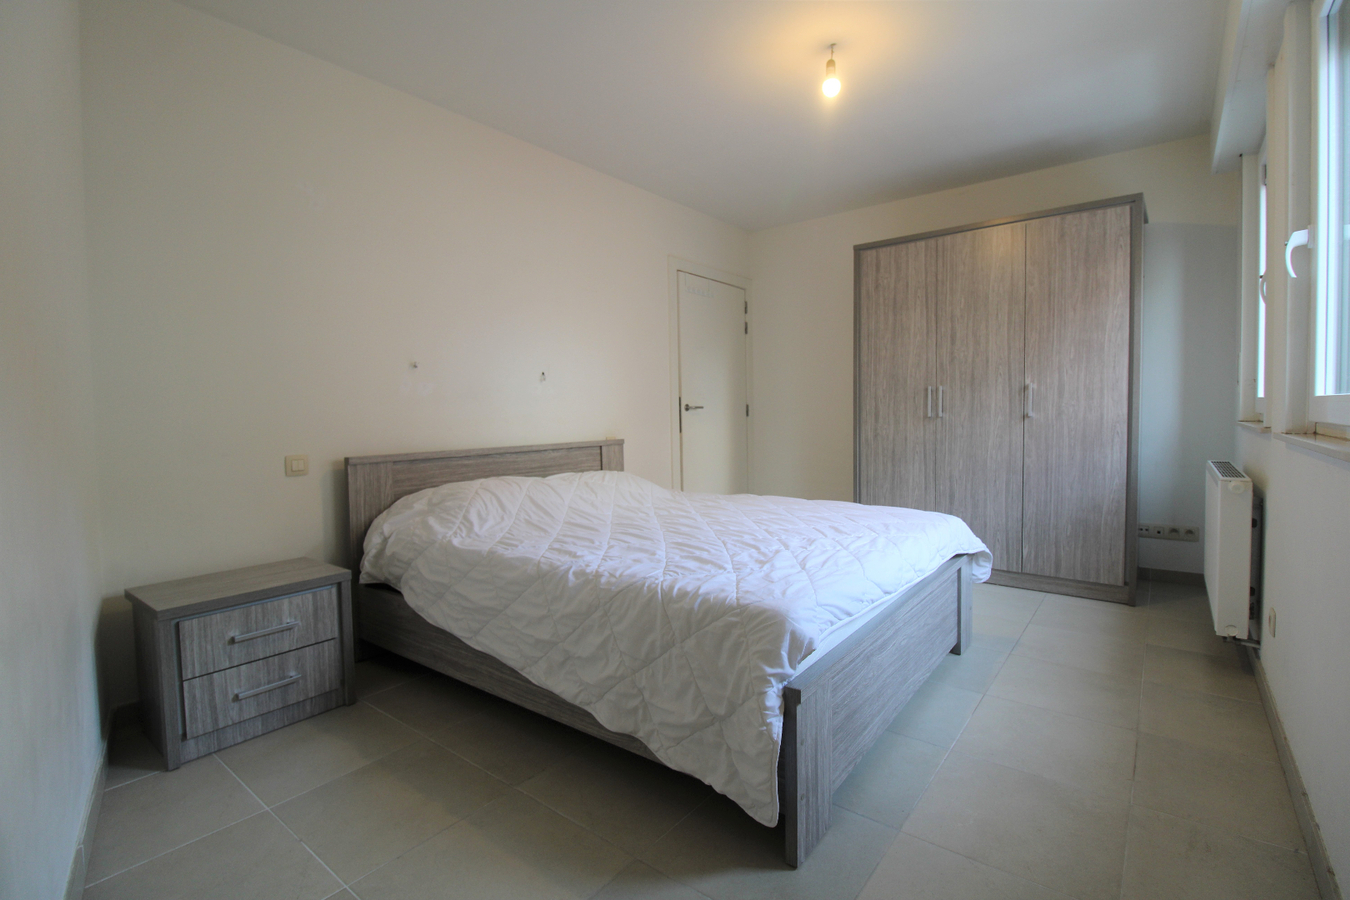 Appartement met twee slaapkamers en autostaanplaats in centrum Roeselare 